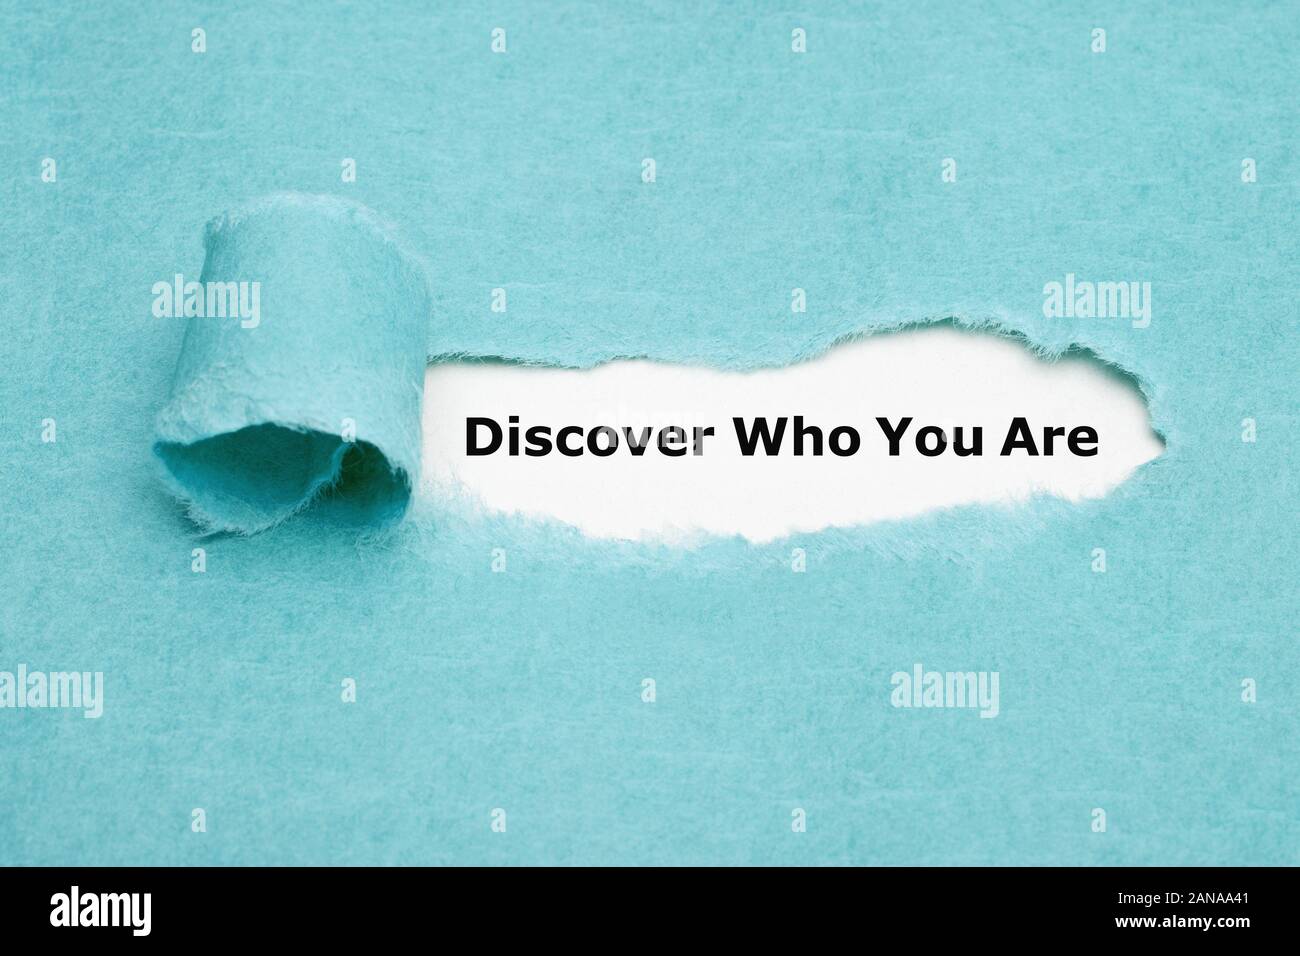 Text Entdecken Sie, wer Sie sind, erscheinen hinter zerrissen blaues Papier. Sich zu finden oder persönliche Entwicklung Konzept. Stockfoto